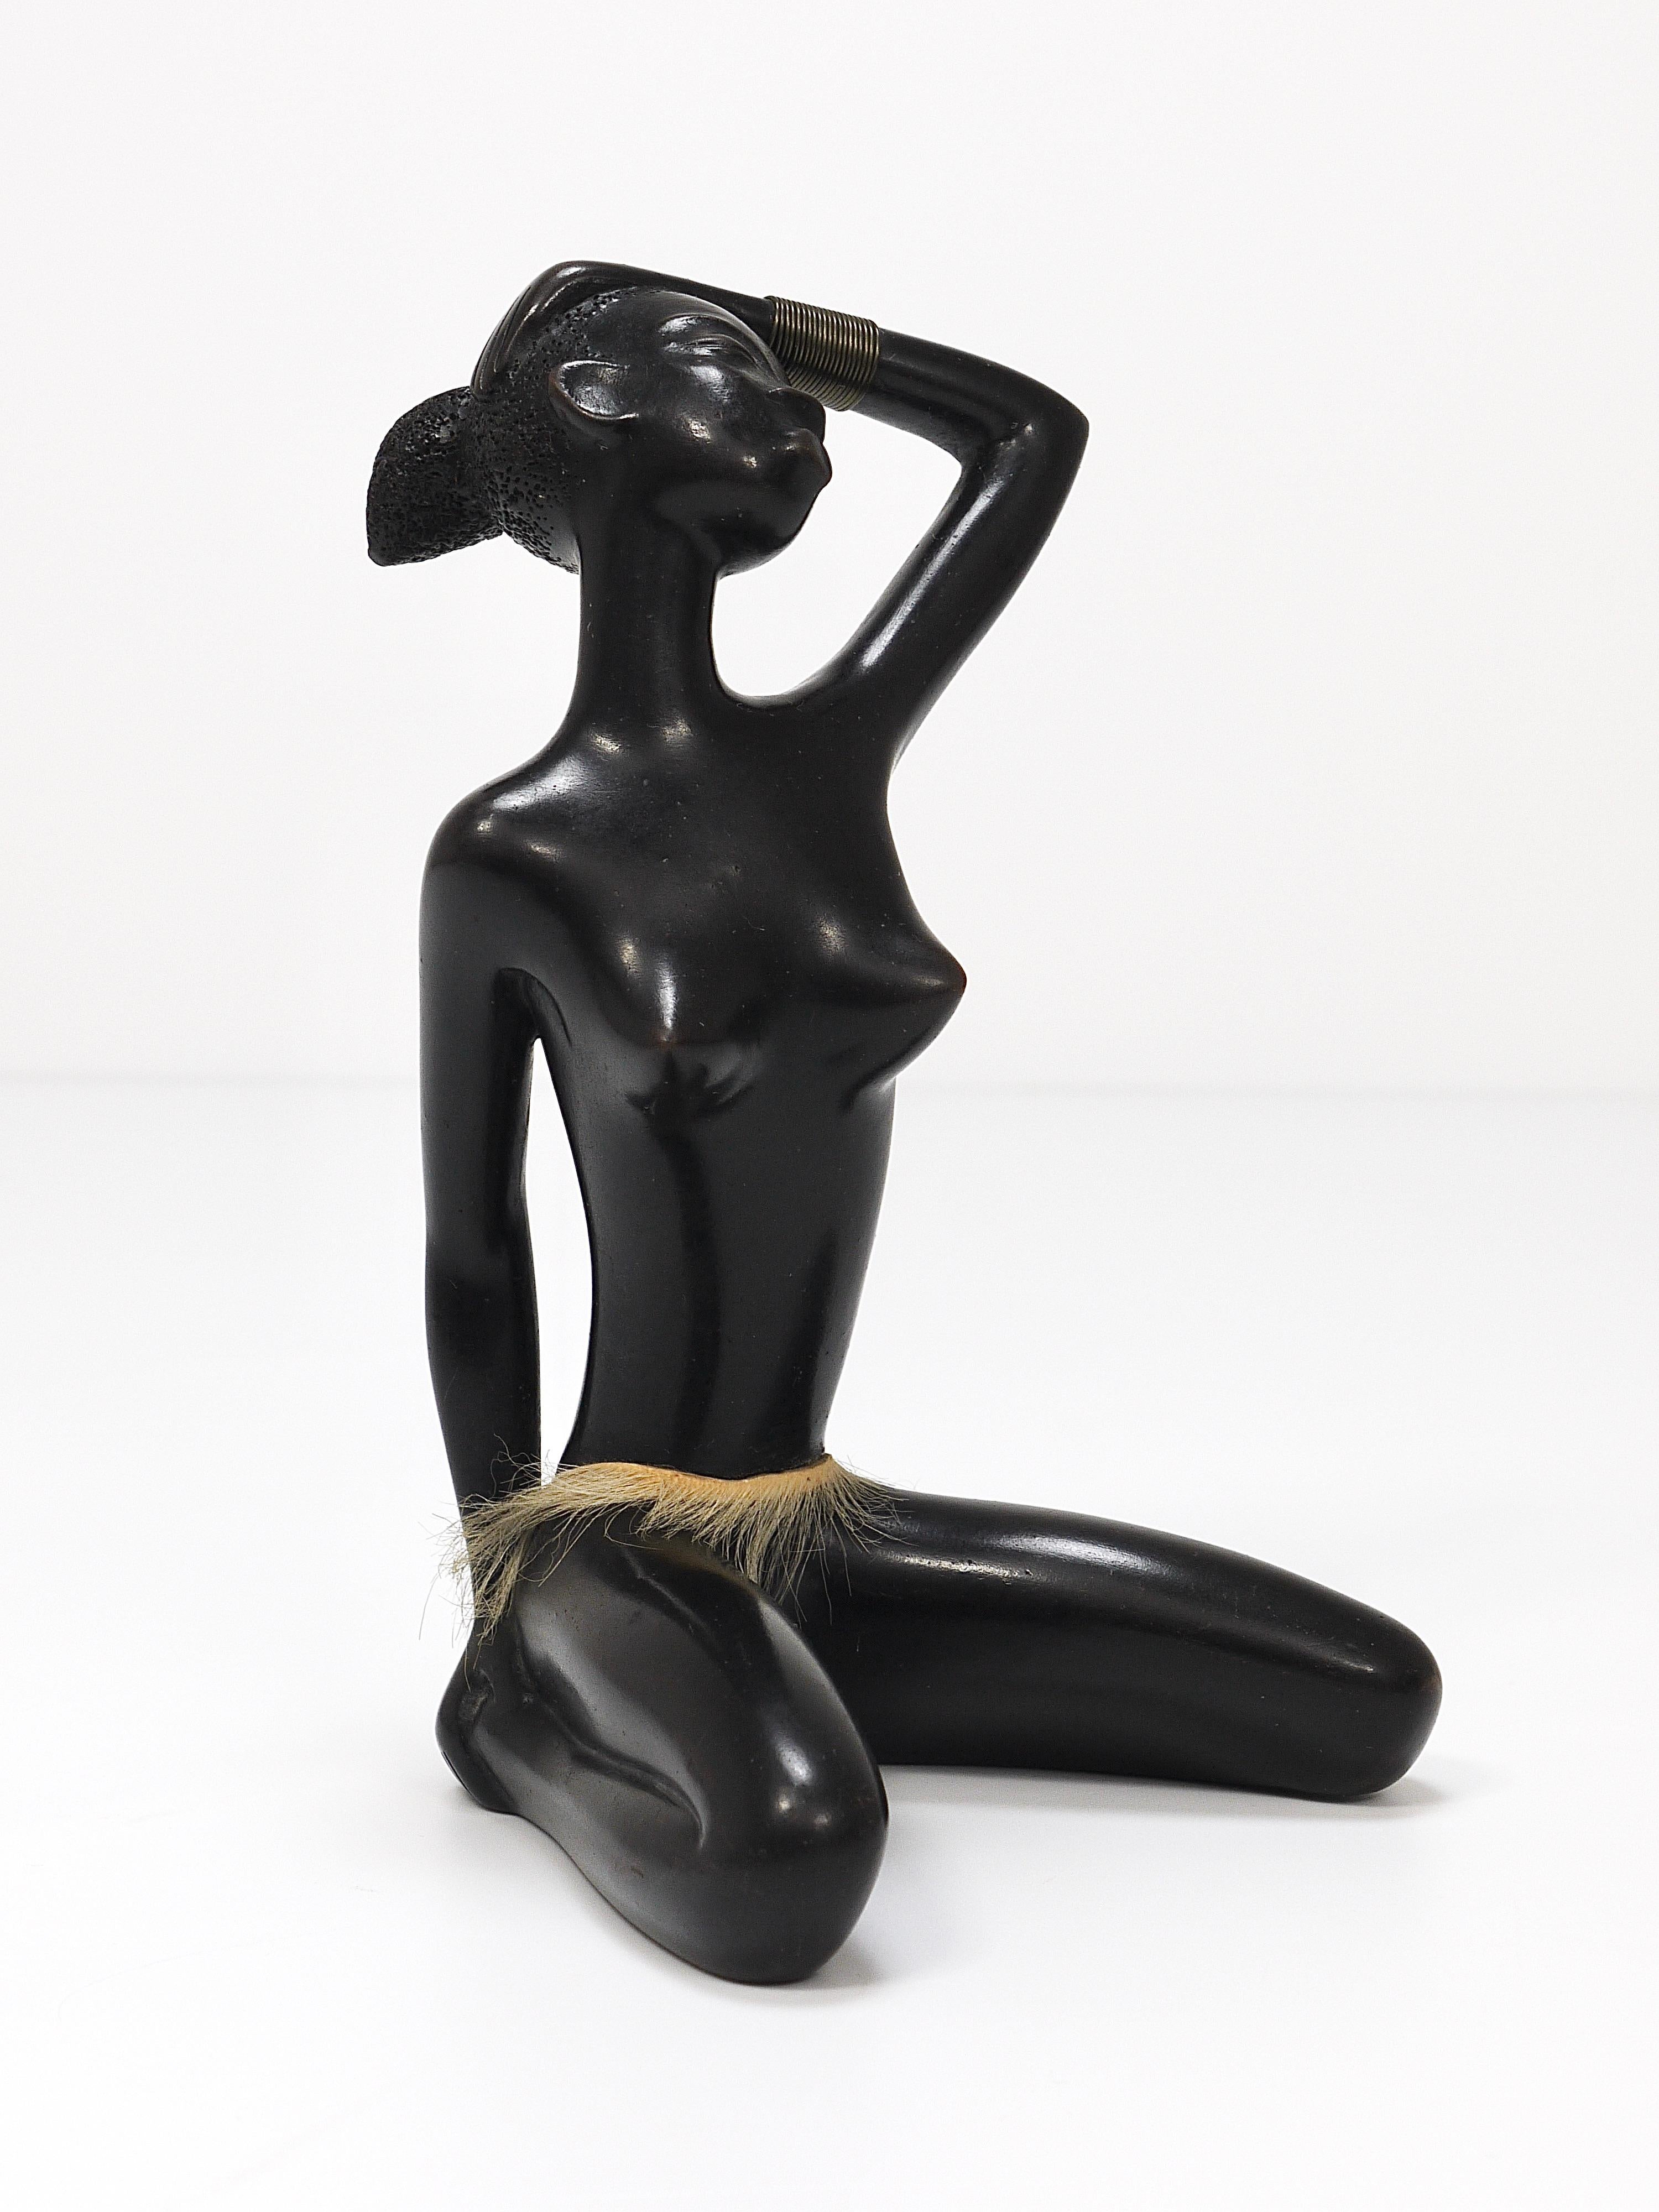 Une belle et décorative sculpture/figurine détaillée, vintage des années 1950, représentant une femme africaine nue assise avec un bracelet en laiton portant une jupe. Conçu et fabriqué à la main par Leopold Anzengruber à Vienne, en Autriche. Une